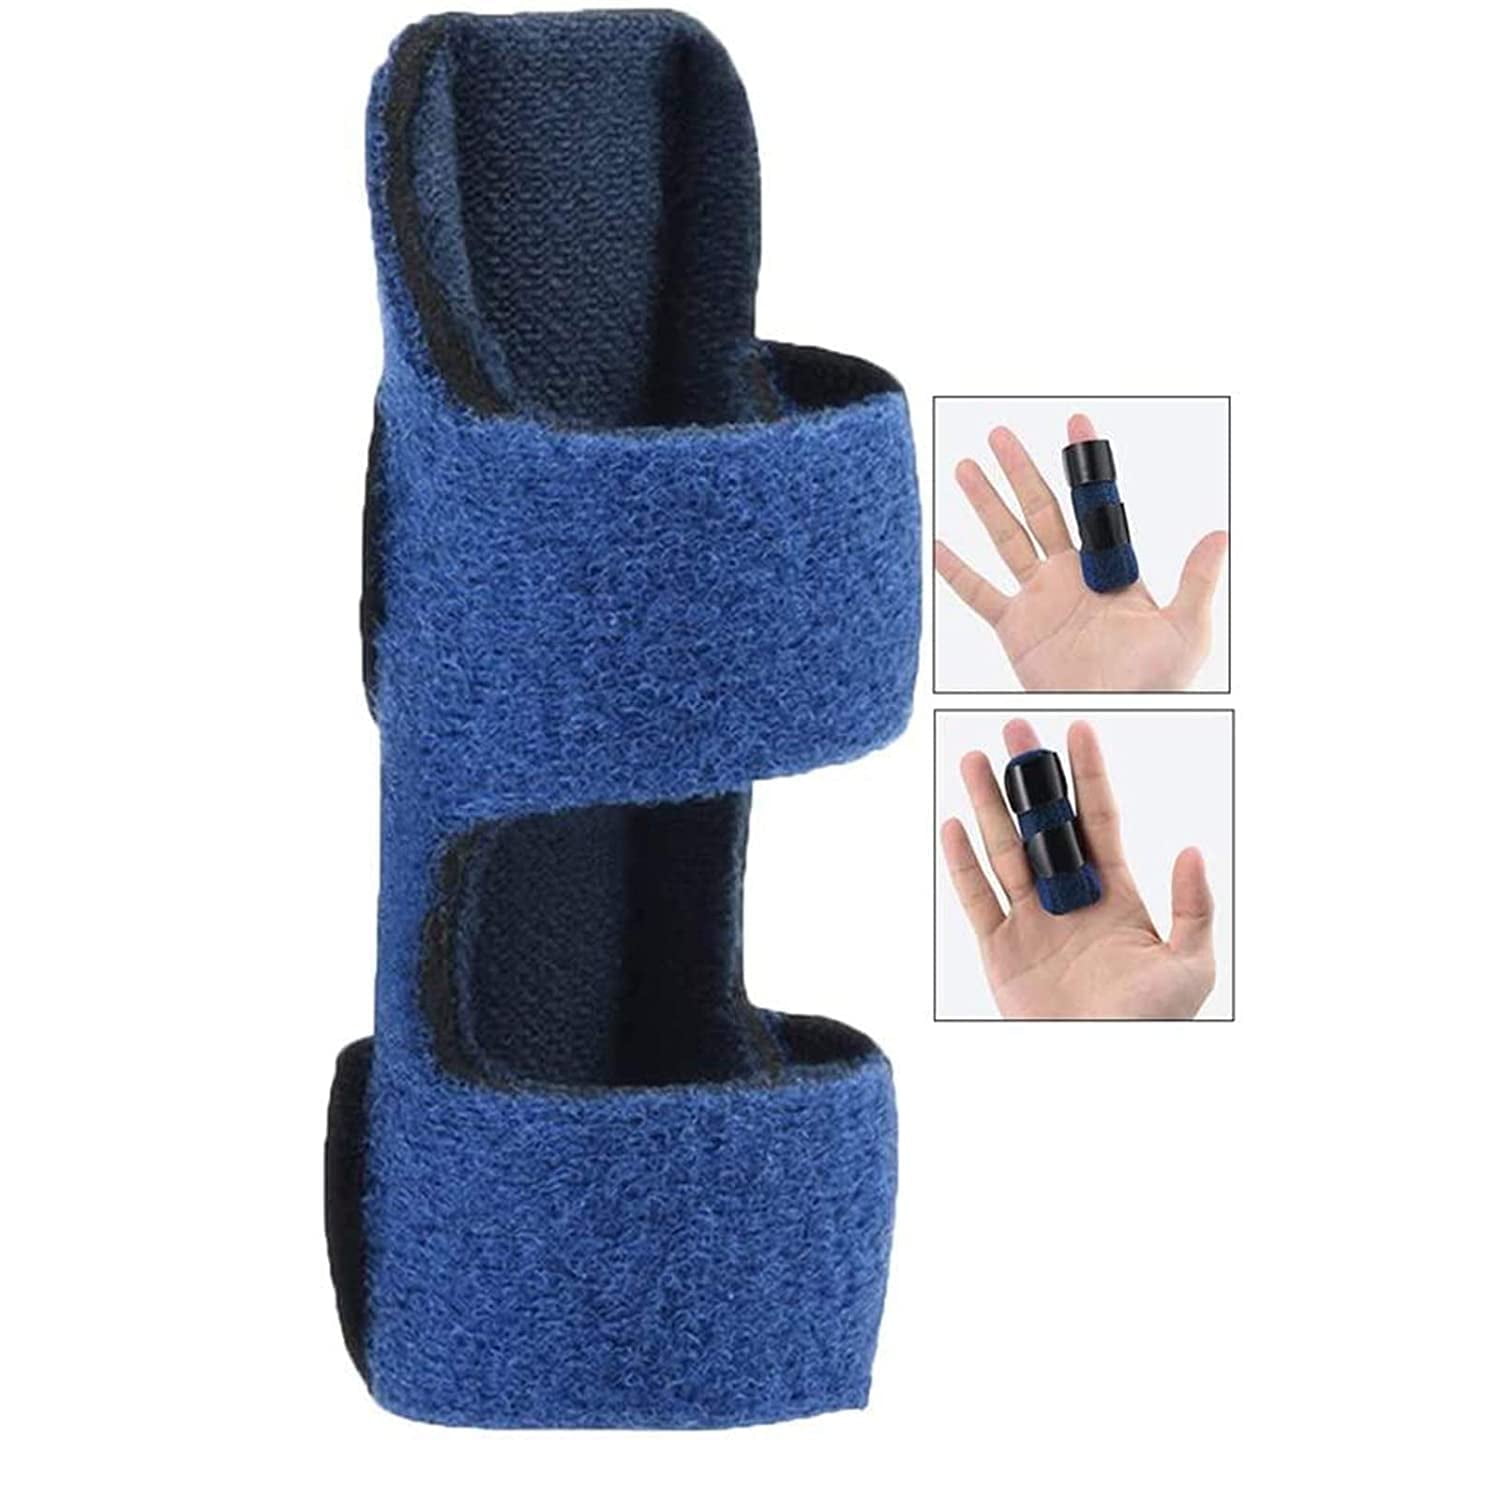 Finger Splint, Shellvcase Adjustable Finger Brace Splints with Built-in ...